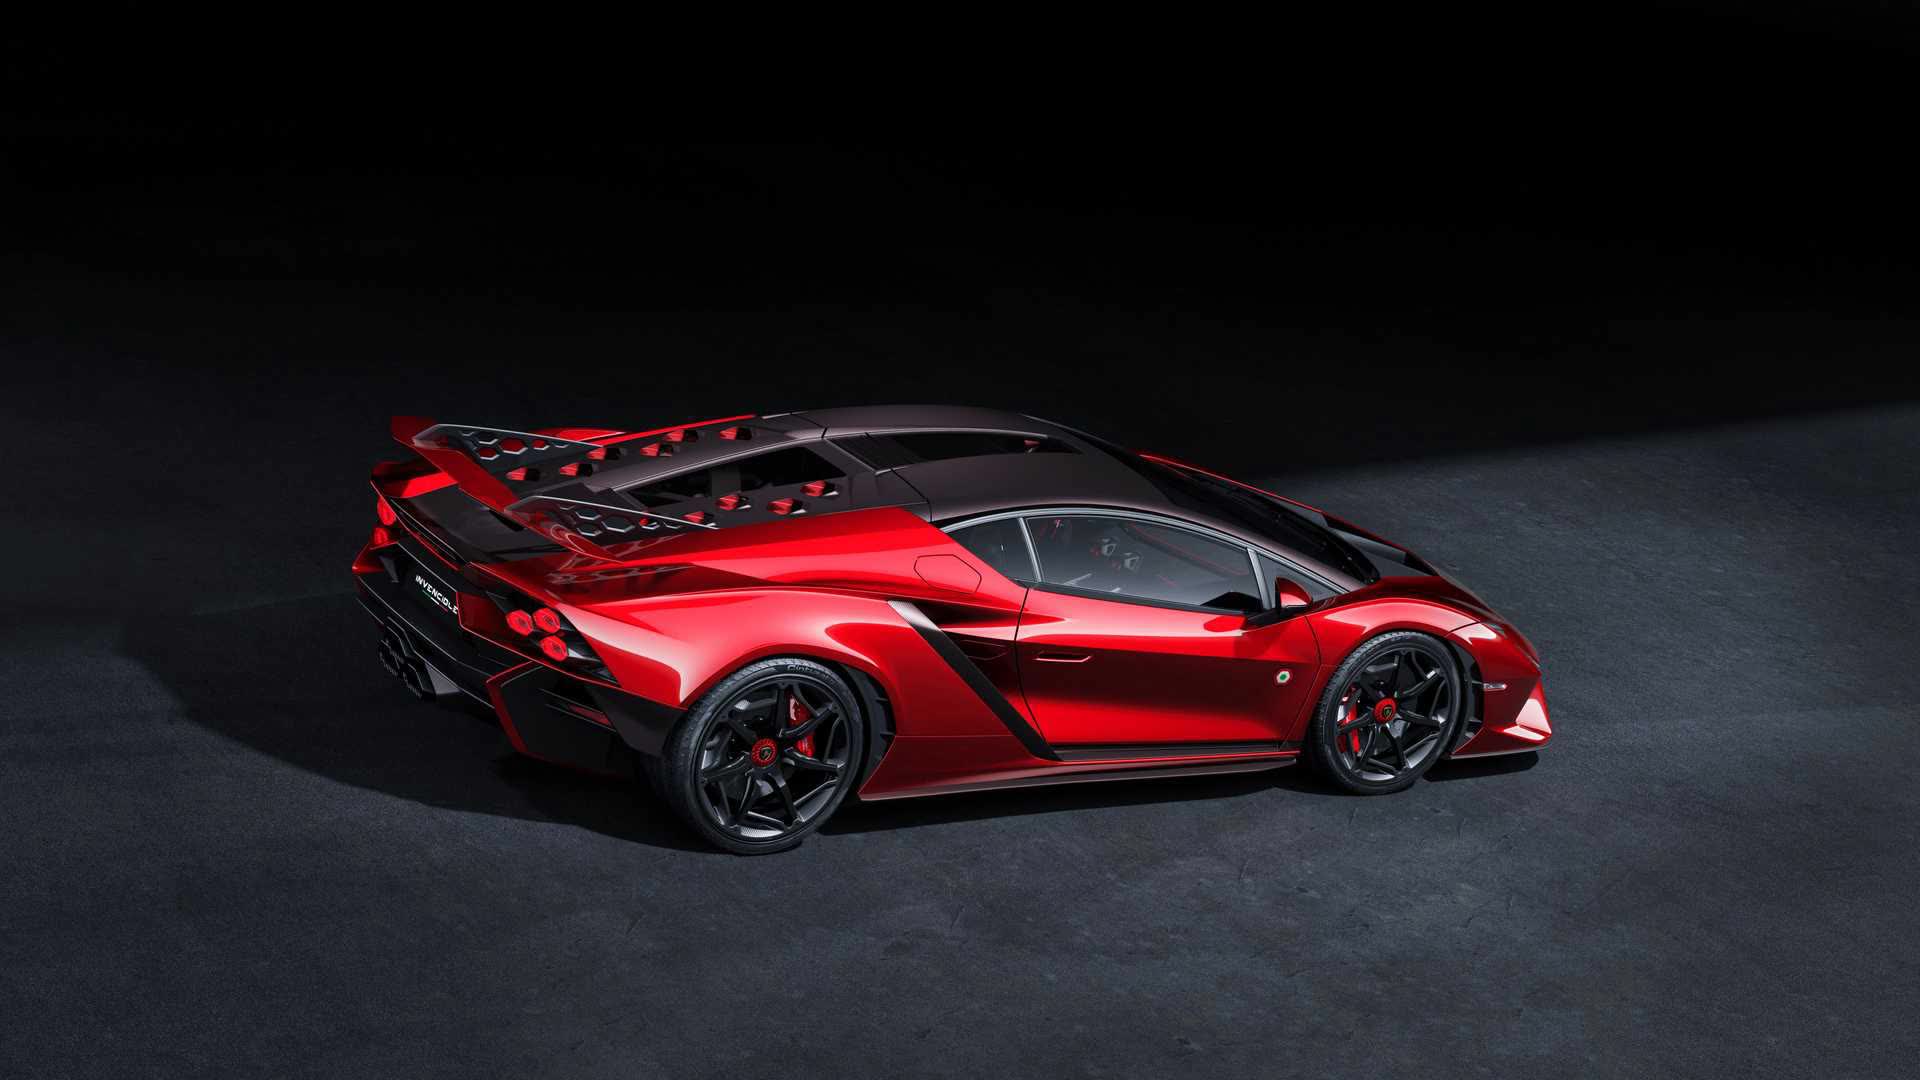 Lamborghini ra mắt bộ đôi siêu xe V12 chạy xăng cuối cùng, sau đây sẽ toàn siêu xe điện êm ru chưa biết nẹt pô kiểu gì - ảnh 4